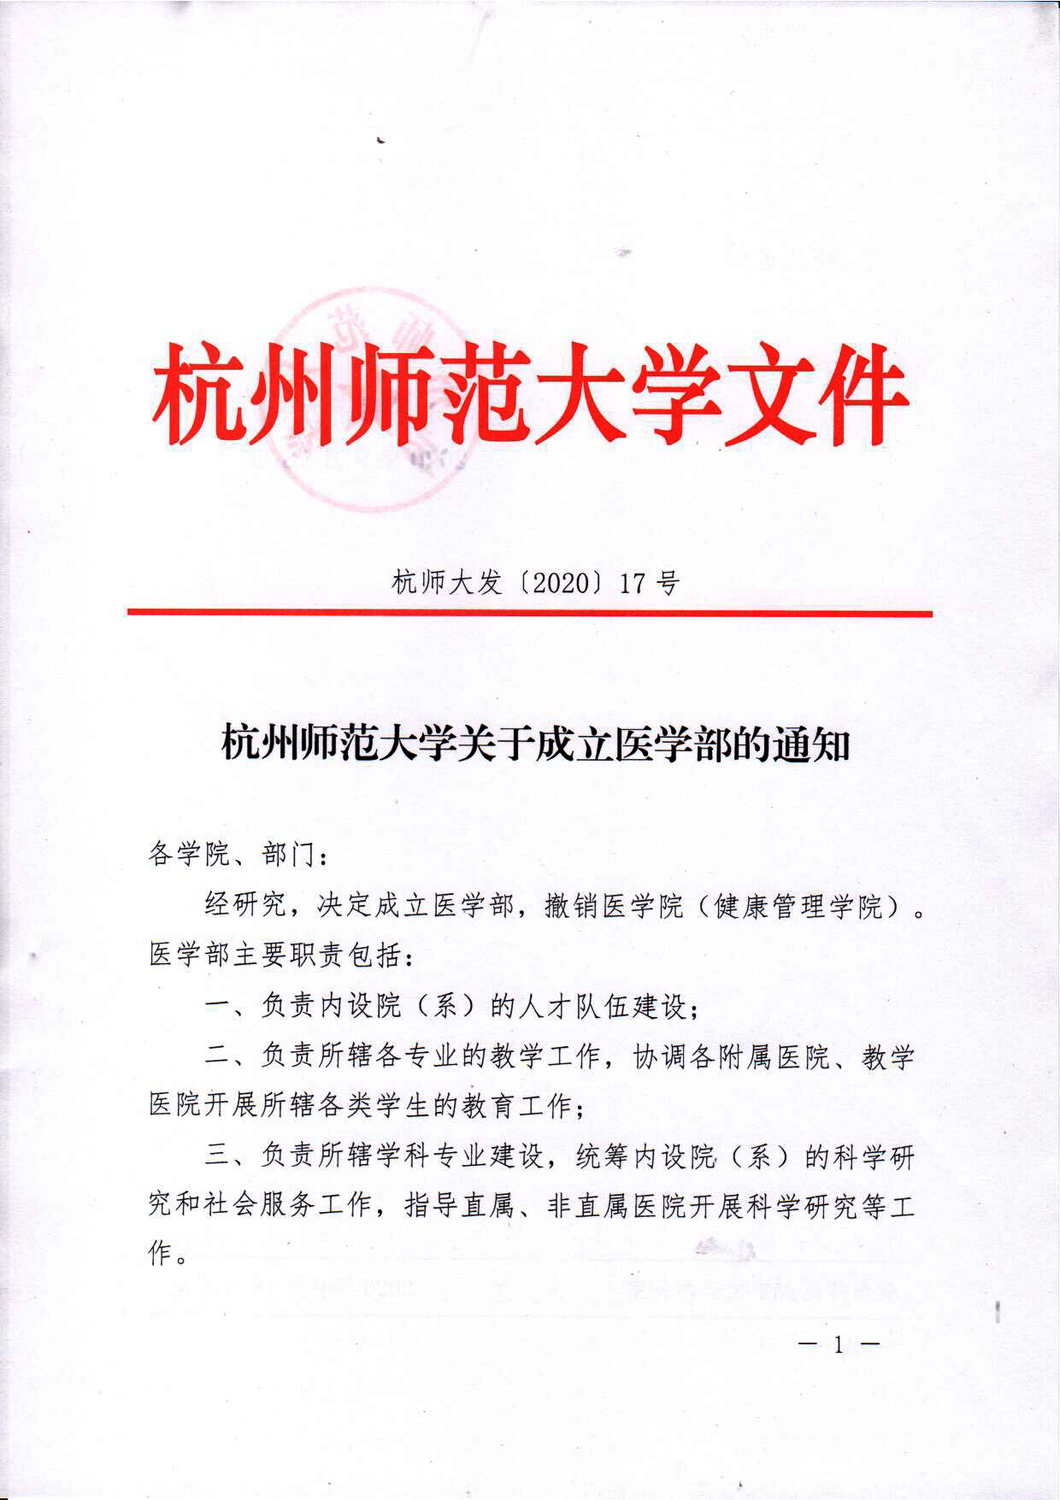 杭州师范大学关于成立医学部的通知_页面_1